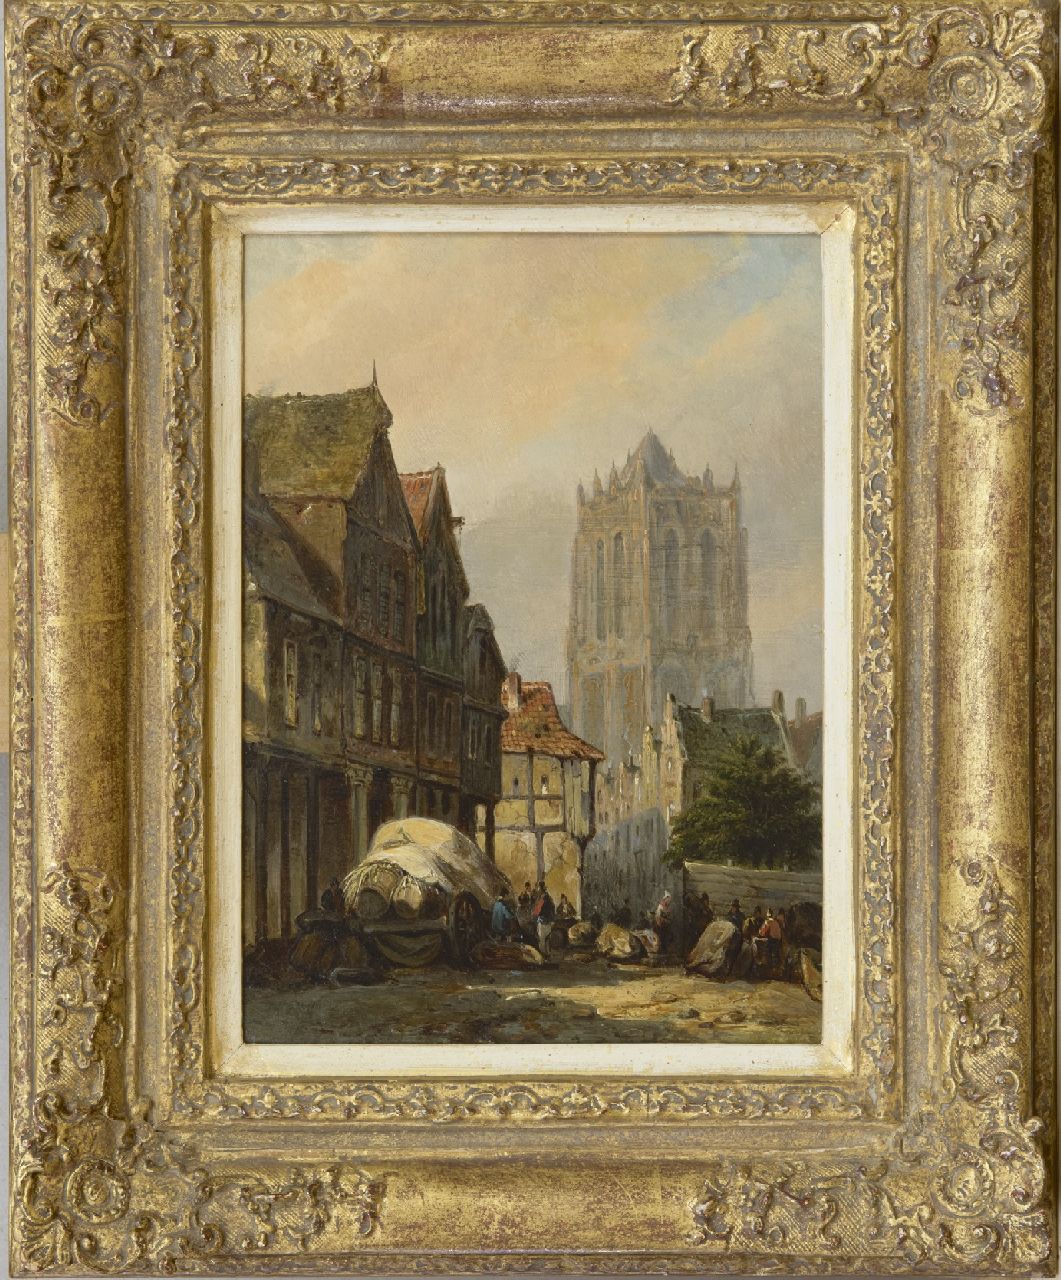 Bommel E.P. van | Elias Pieter van Bommel | Schilderijen te koop aangeboden | Fantasiegezicht van een stad en de Sint-Lievensmonstertoren van Zierikzee, olieverf op paneel 22,5 x 16,4 cm